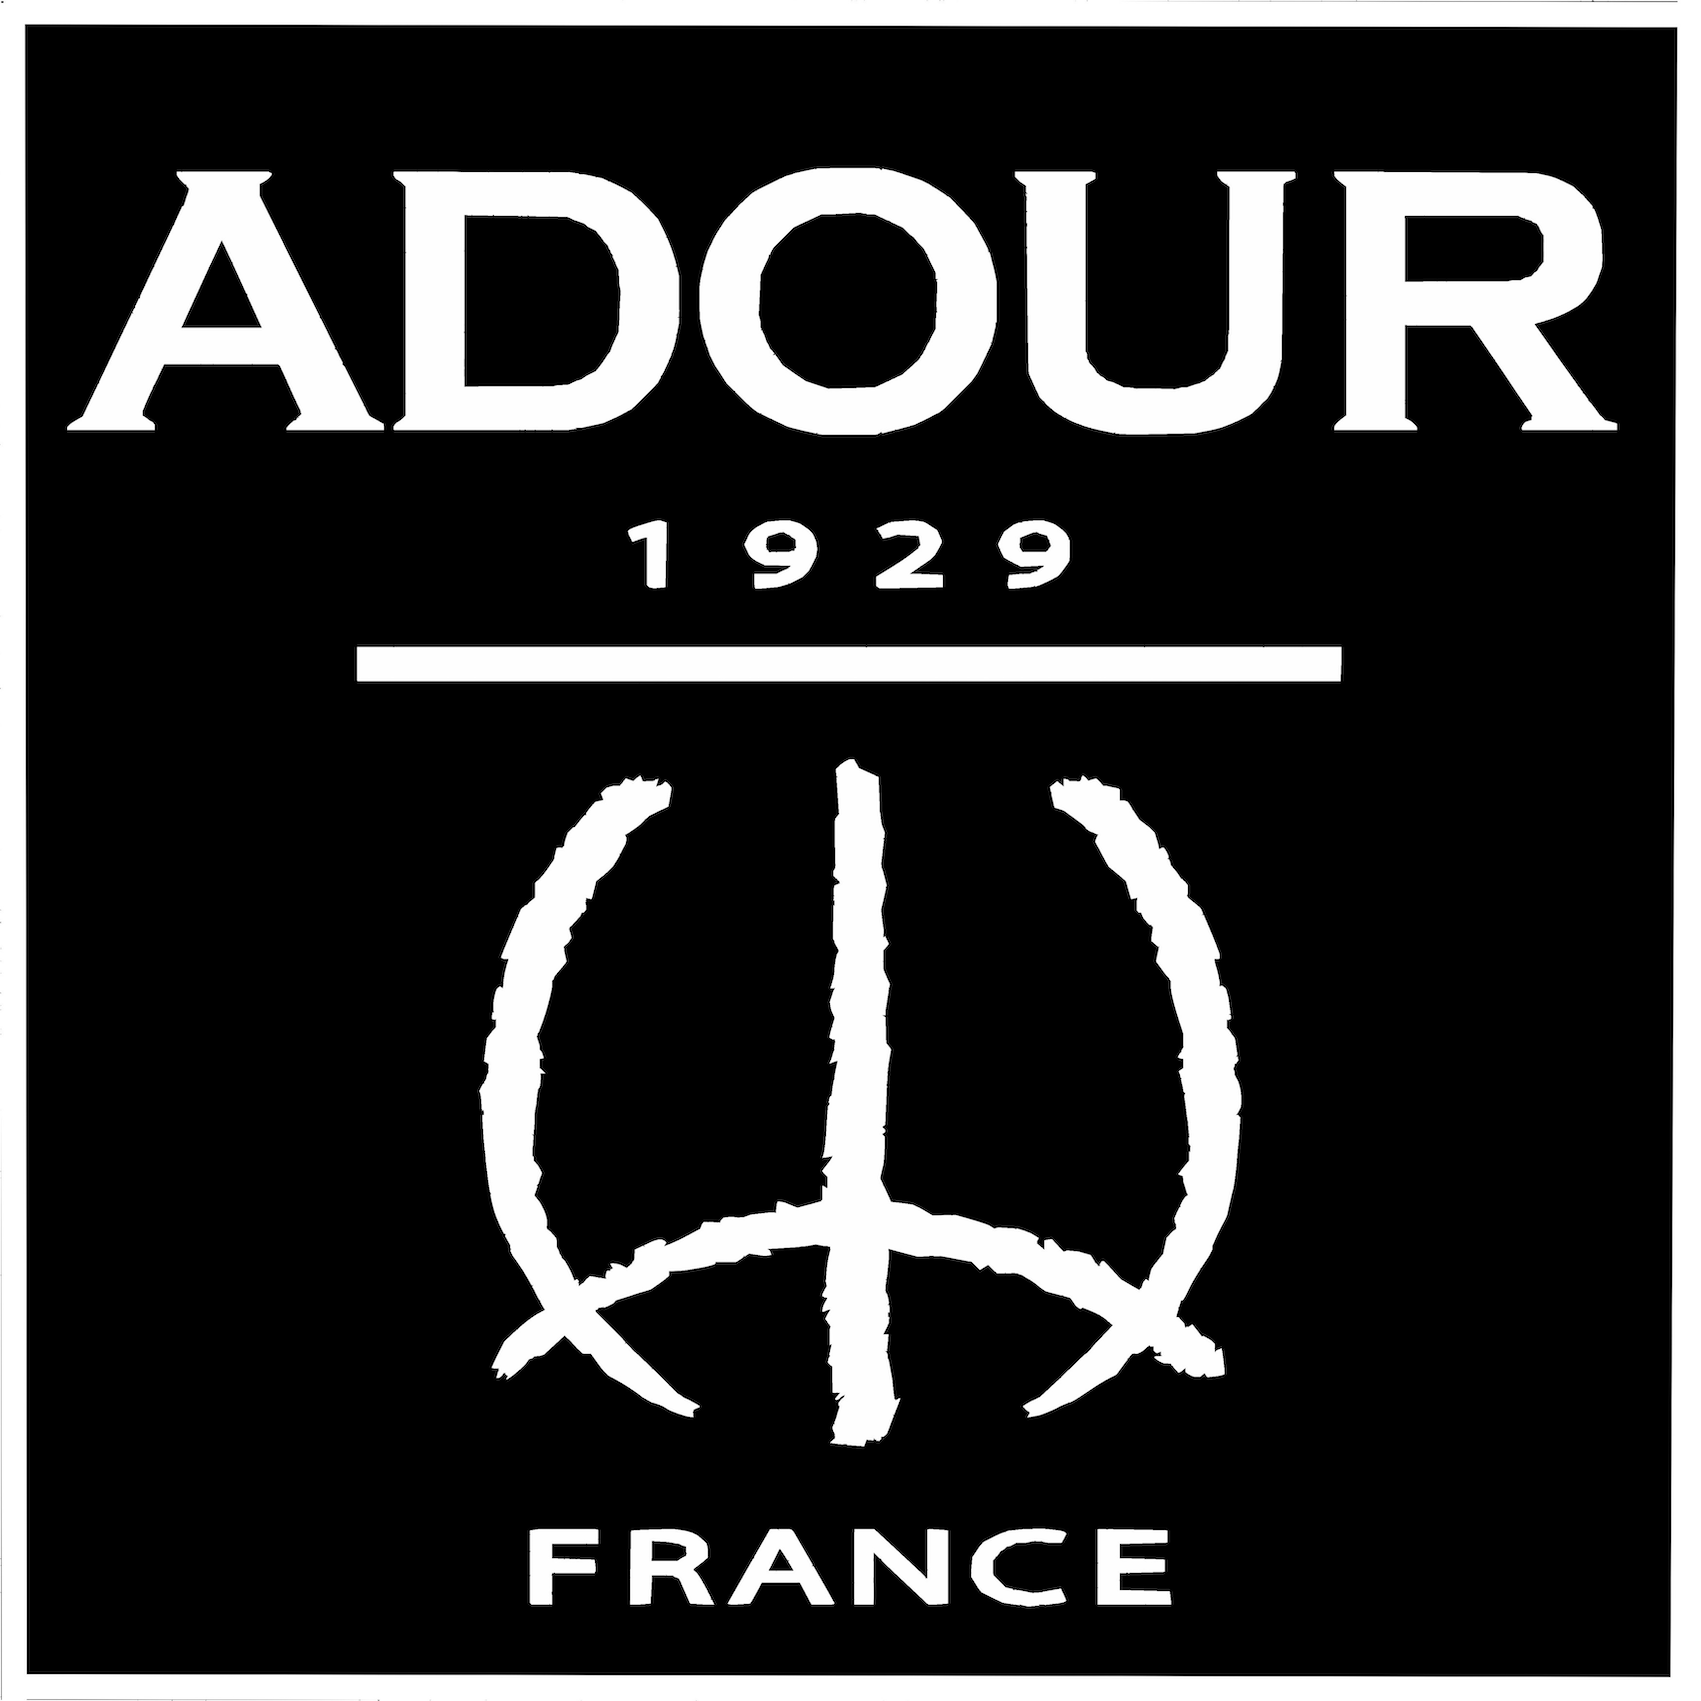 Tonnellerie de l’Adour | 1929 